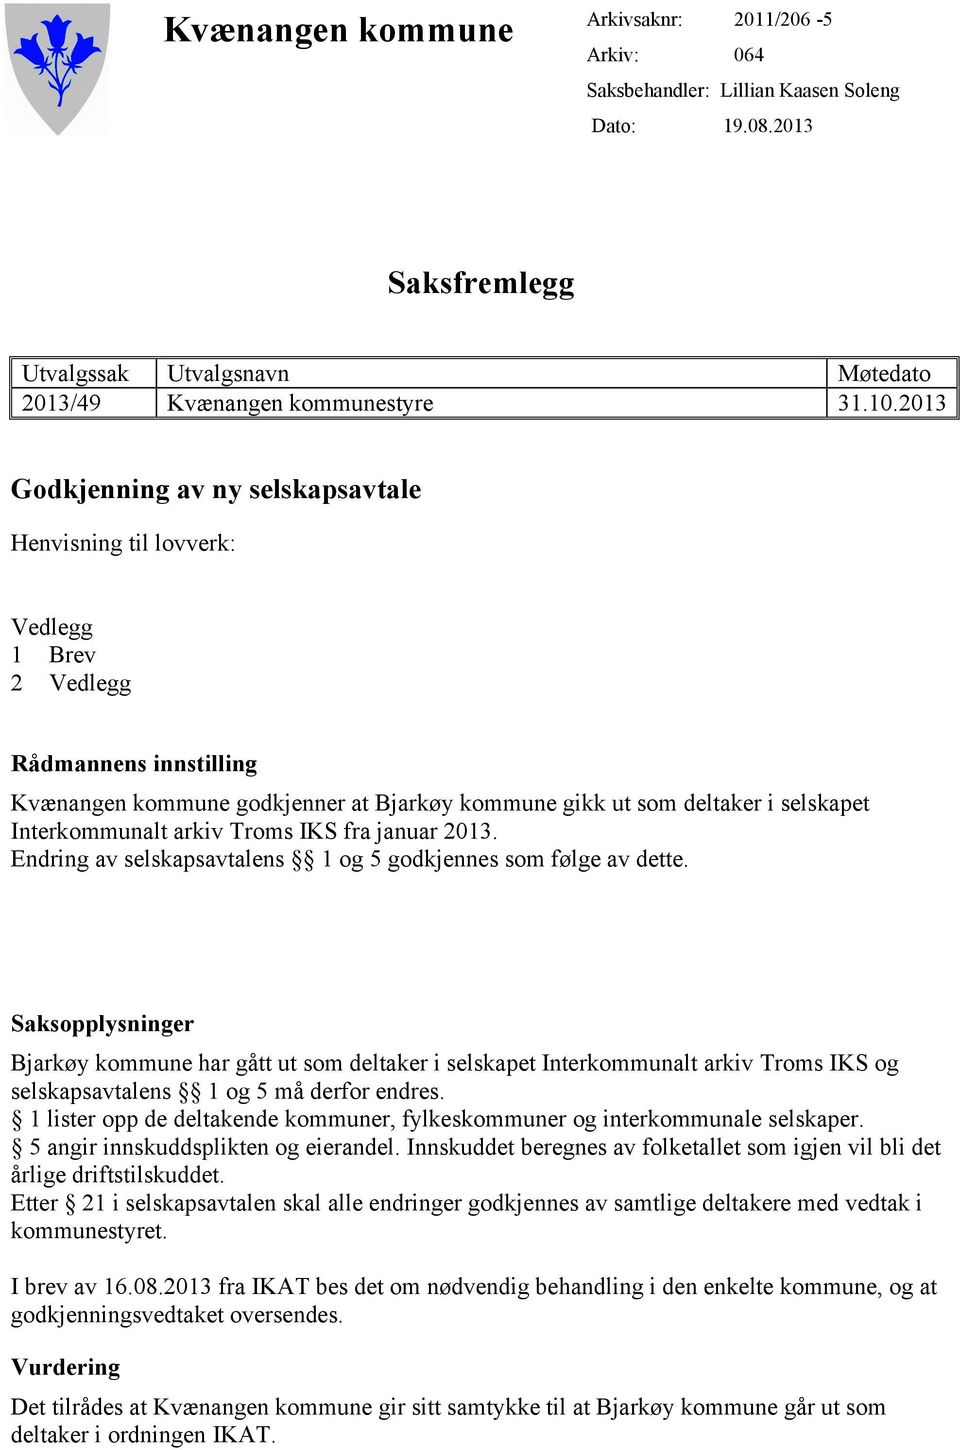 Interkommunalt arkiv Troms IKS fra januar 2013. Endring av selskapsavtalens 1 og 5 godkjennes som følge av dette.